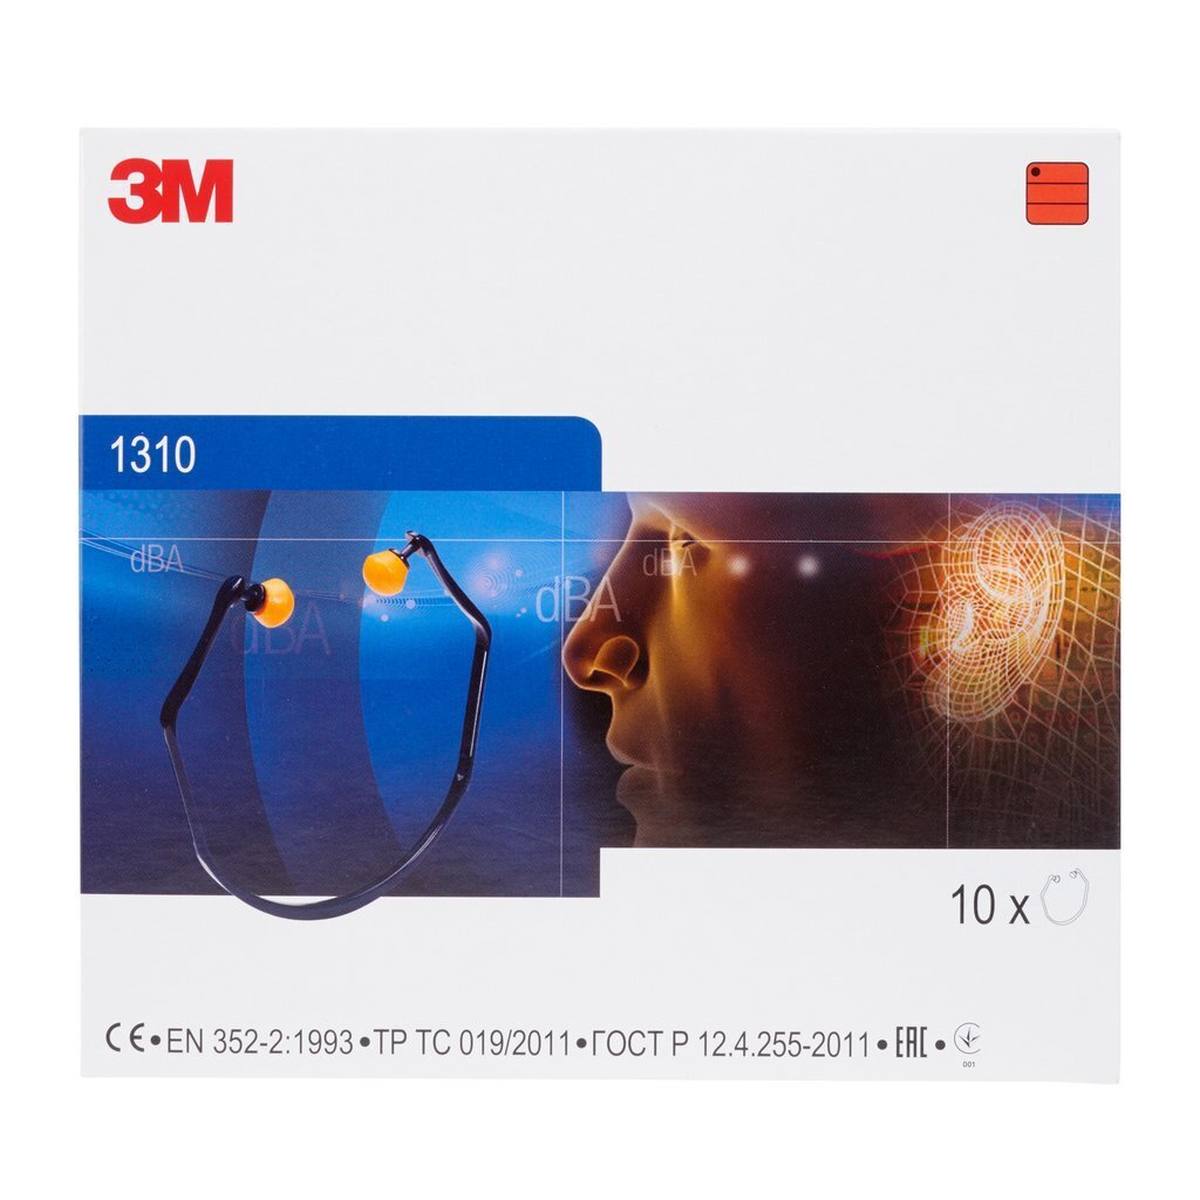 Protectores auditivos 3M 1310, especialmente cómodos gracias al diseño elástico del auricular, SNR = 26 dB